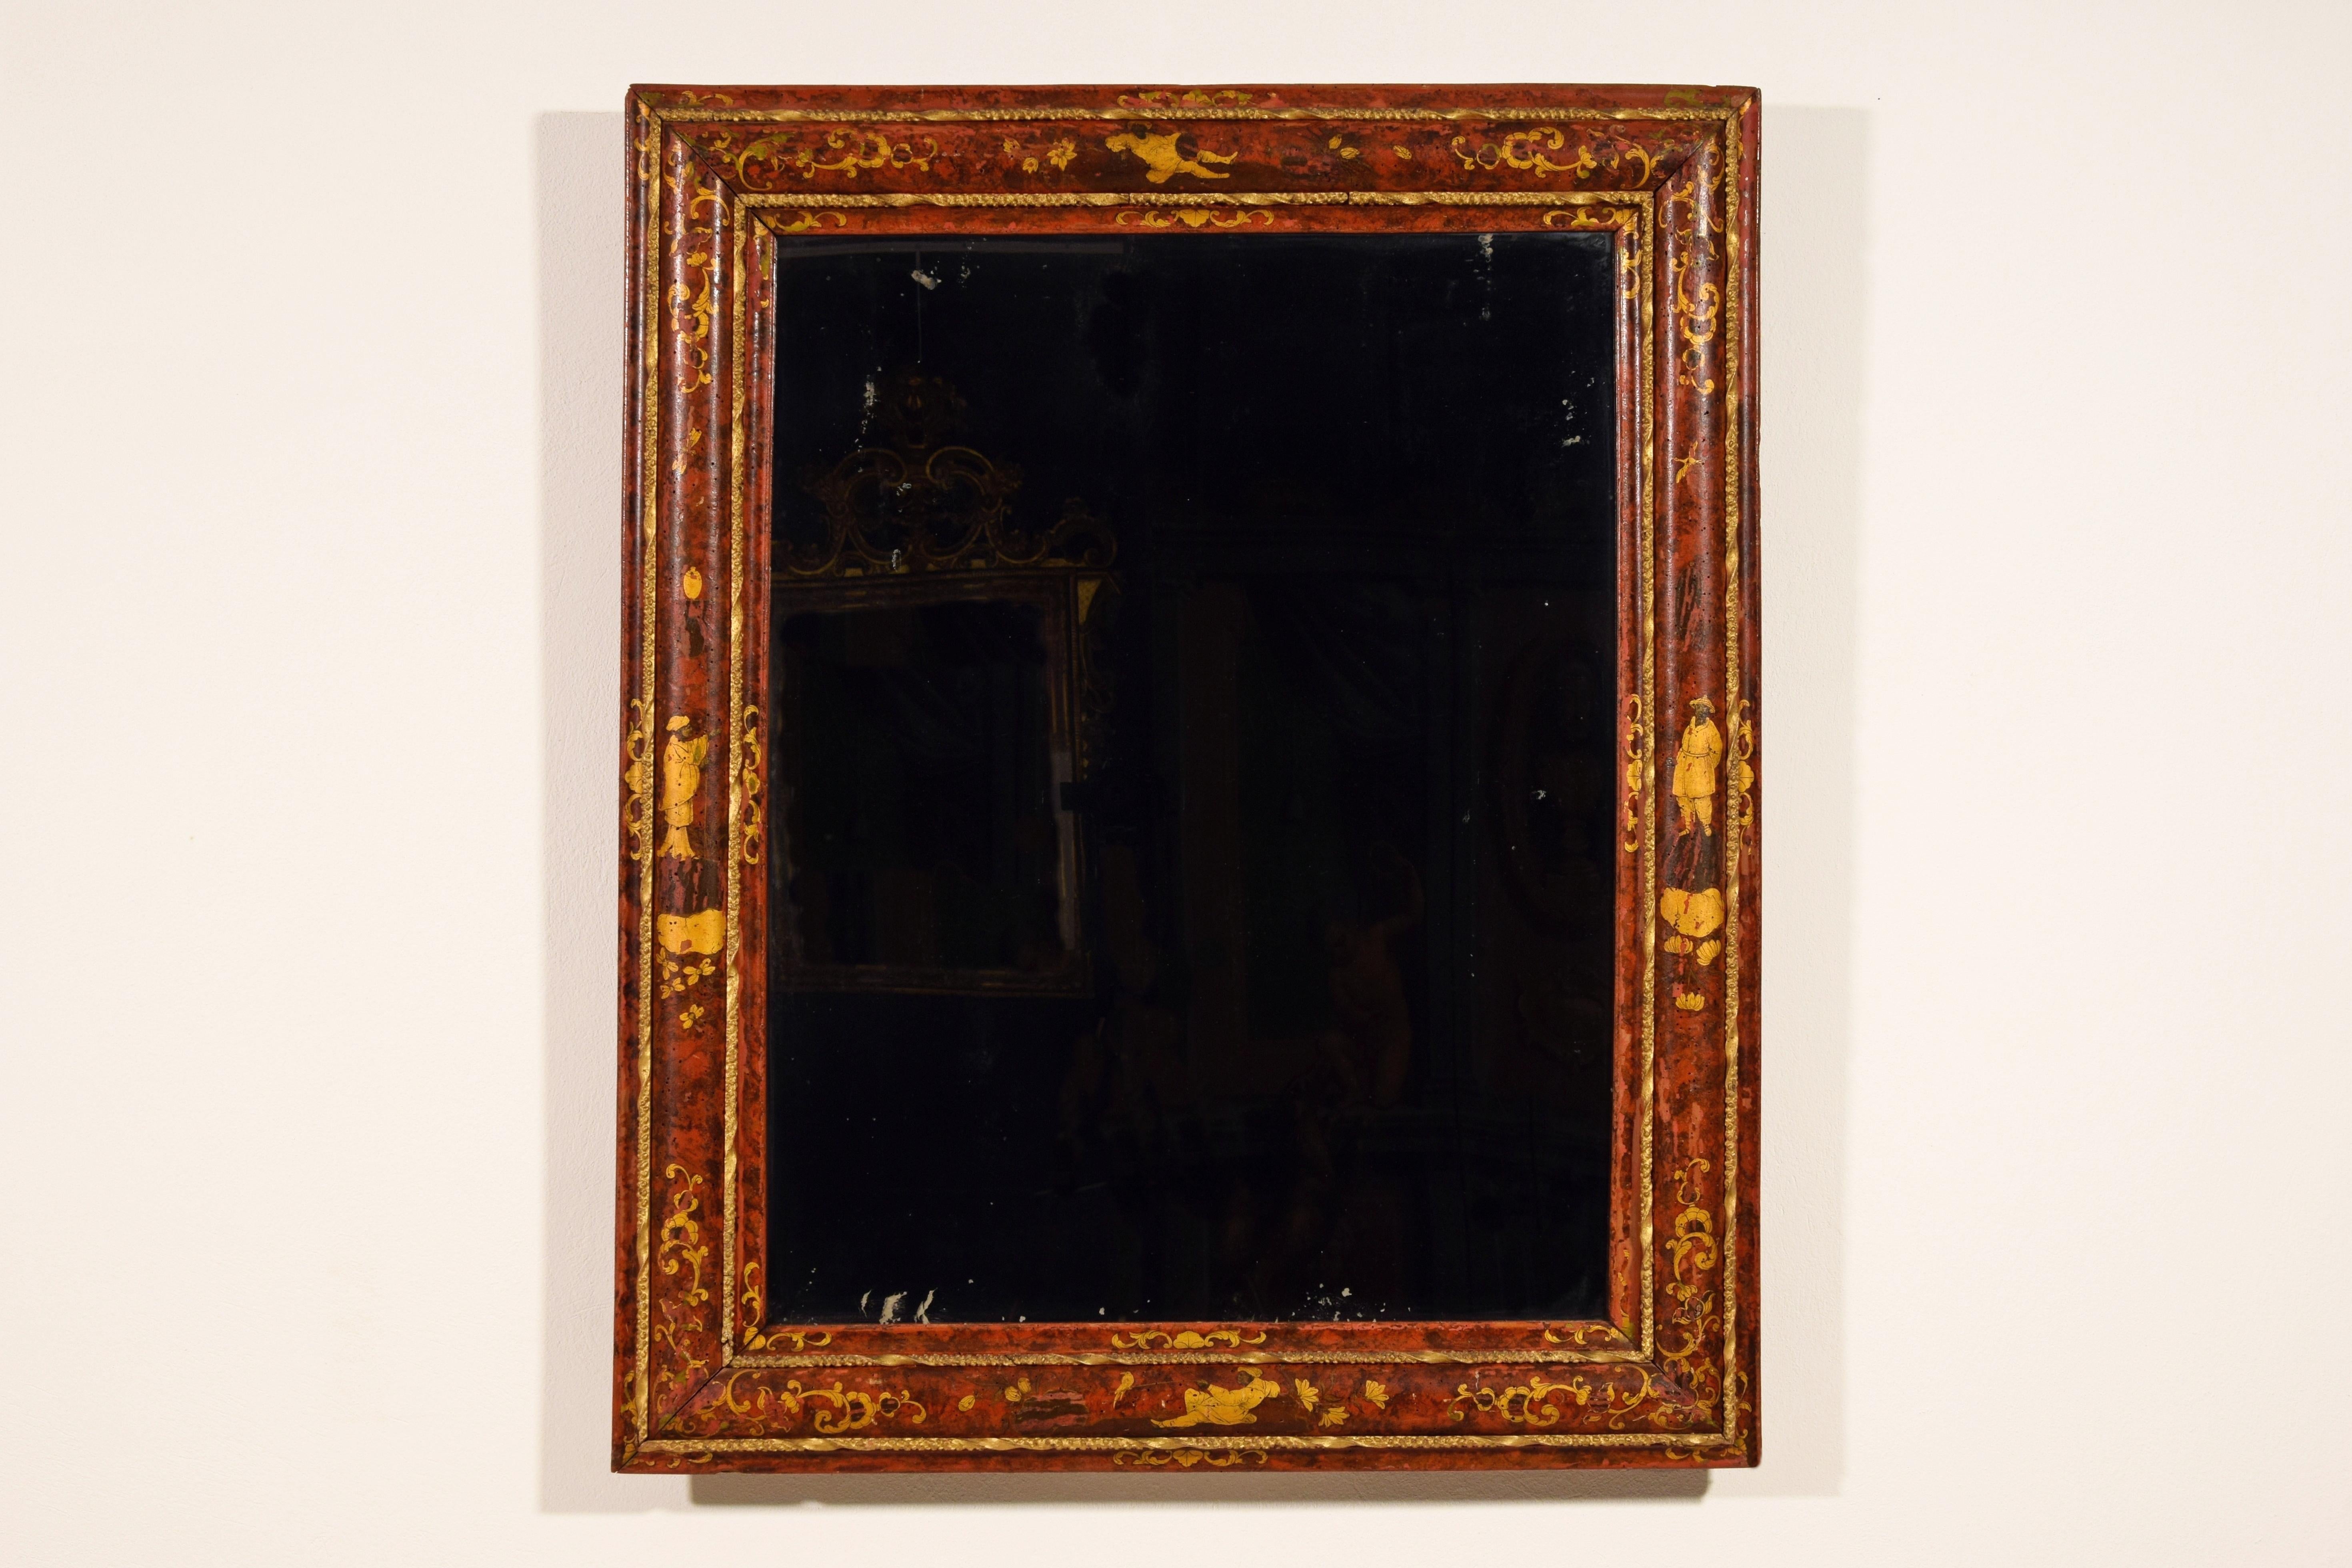 XVIIIe siècle, miroir vénitien en bois laqué de chinoiseries

Cet important miroir a été fabriqué à Venise, en Italie, au XVIIIe siècle. Entièrement laqué en polychrome et or avec des sujets de chinoiseries, est l'œuvre du célèbre laqueur